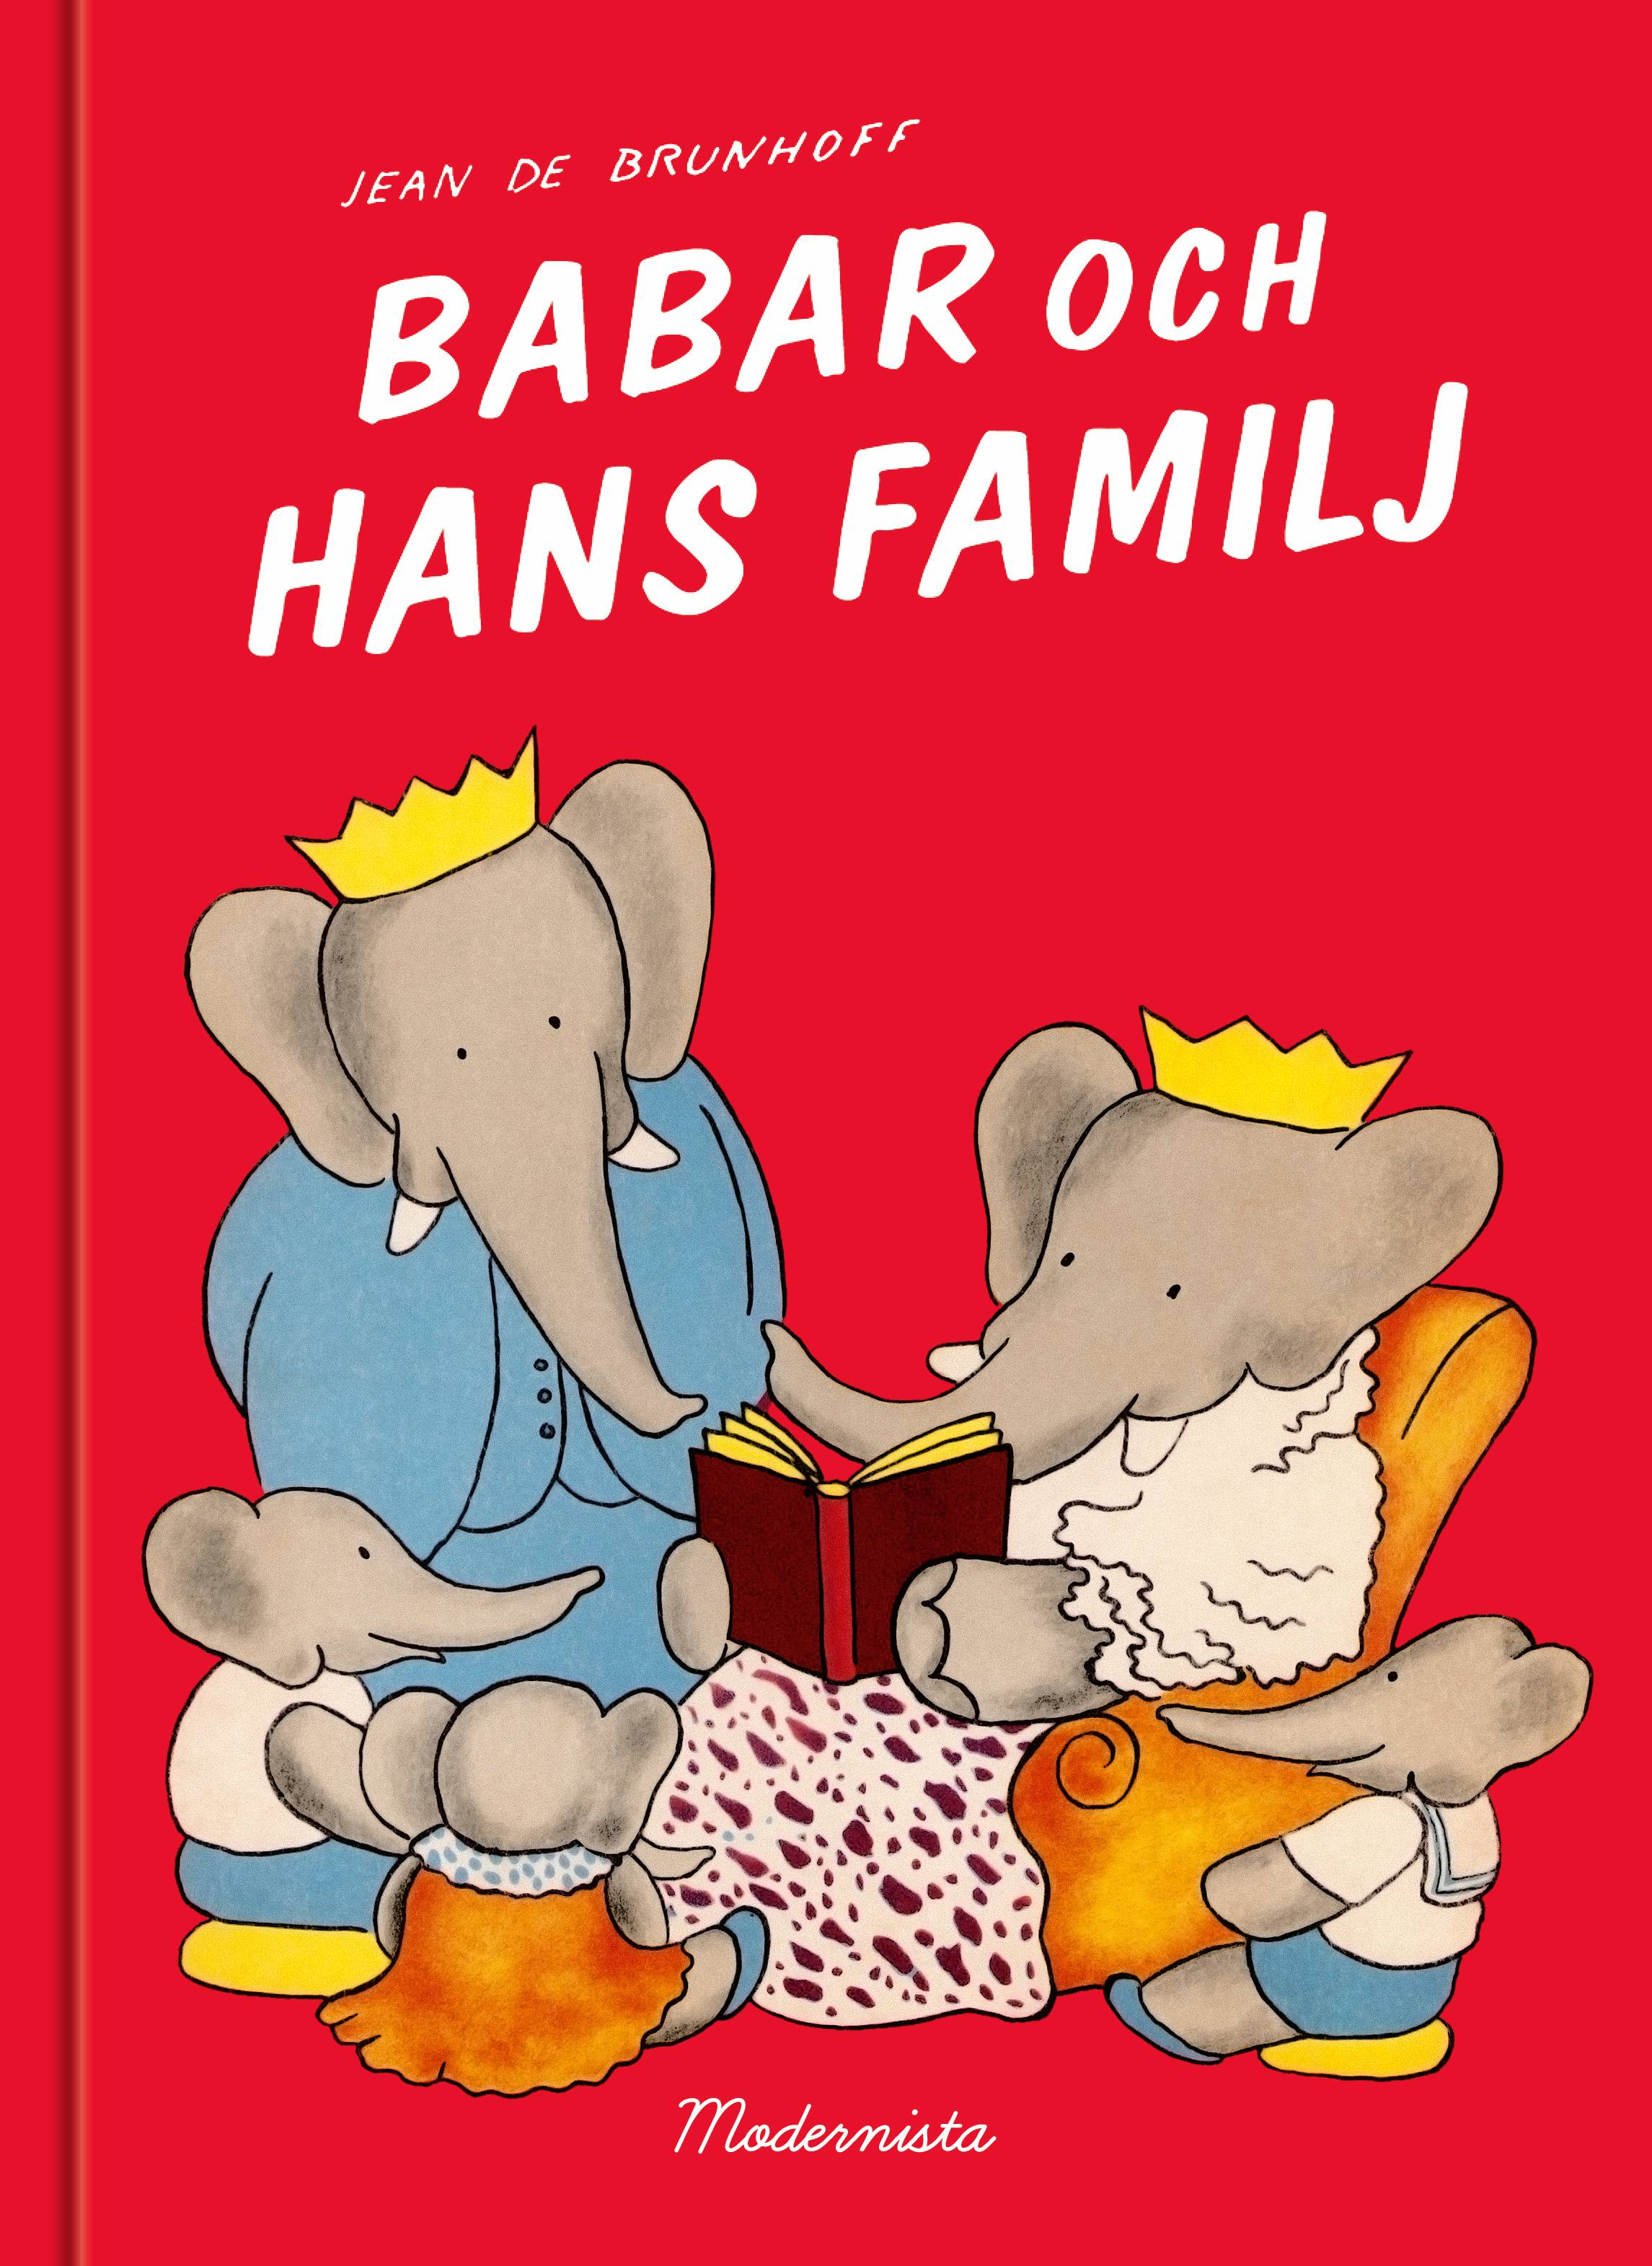 Babar och hans familj